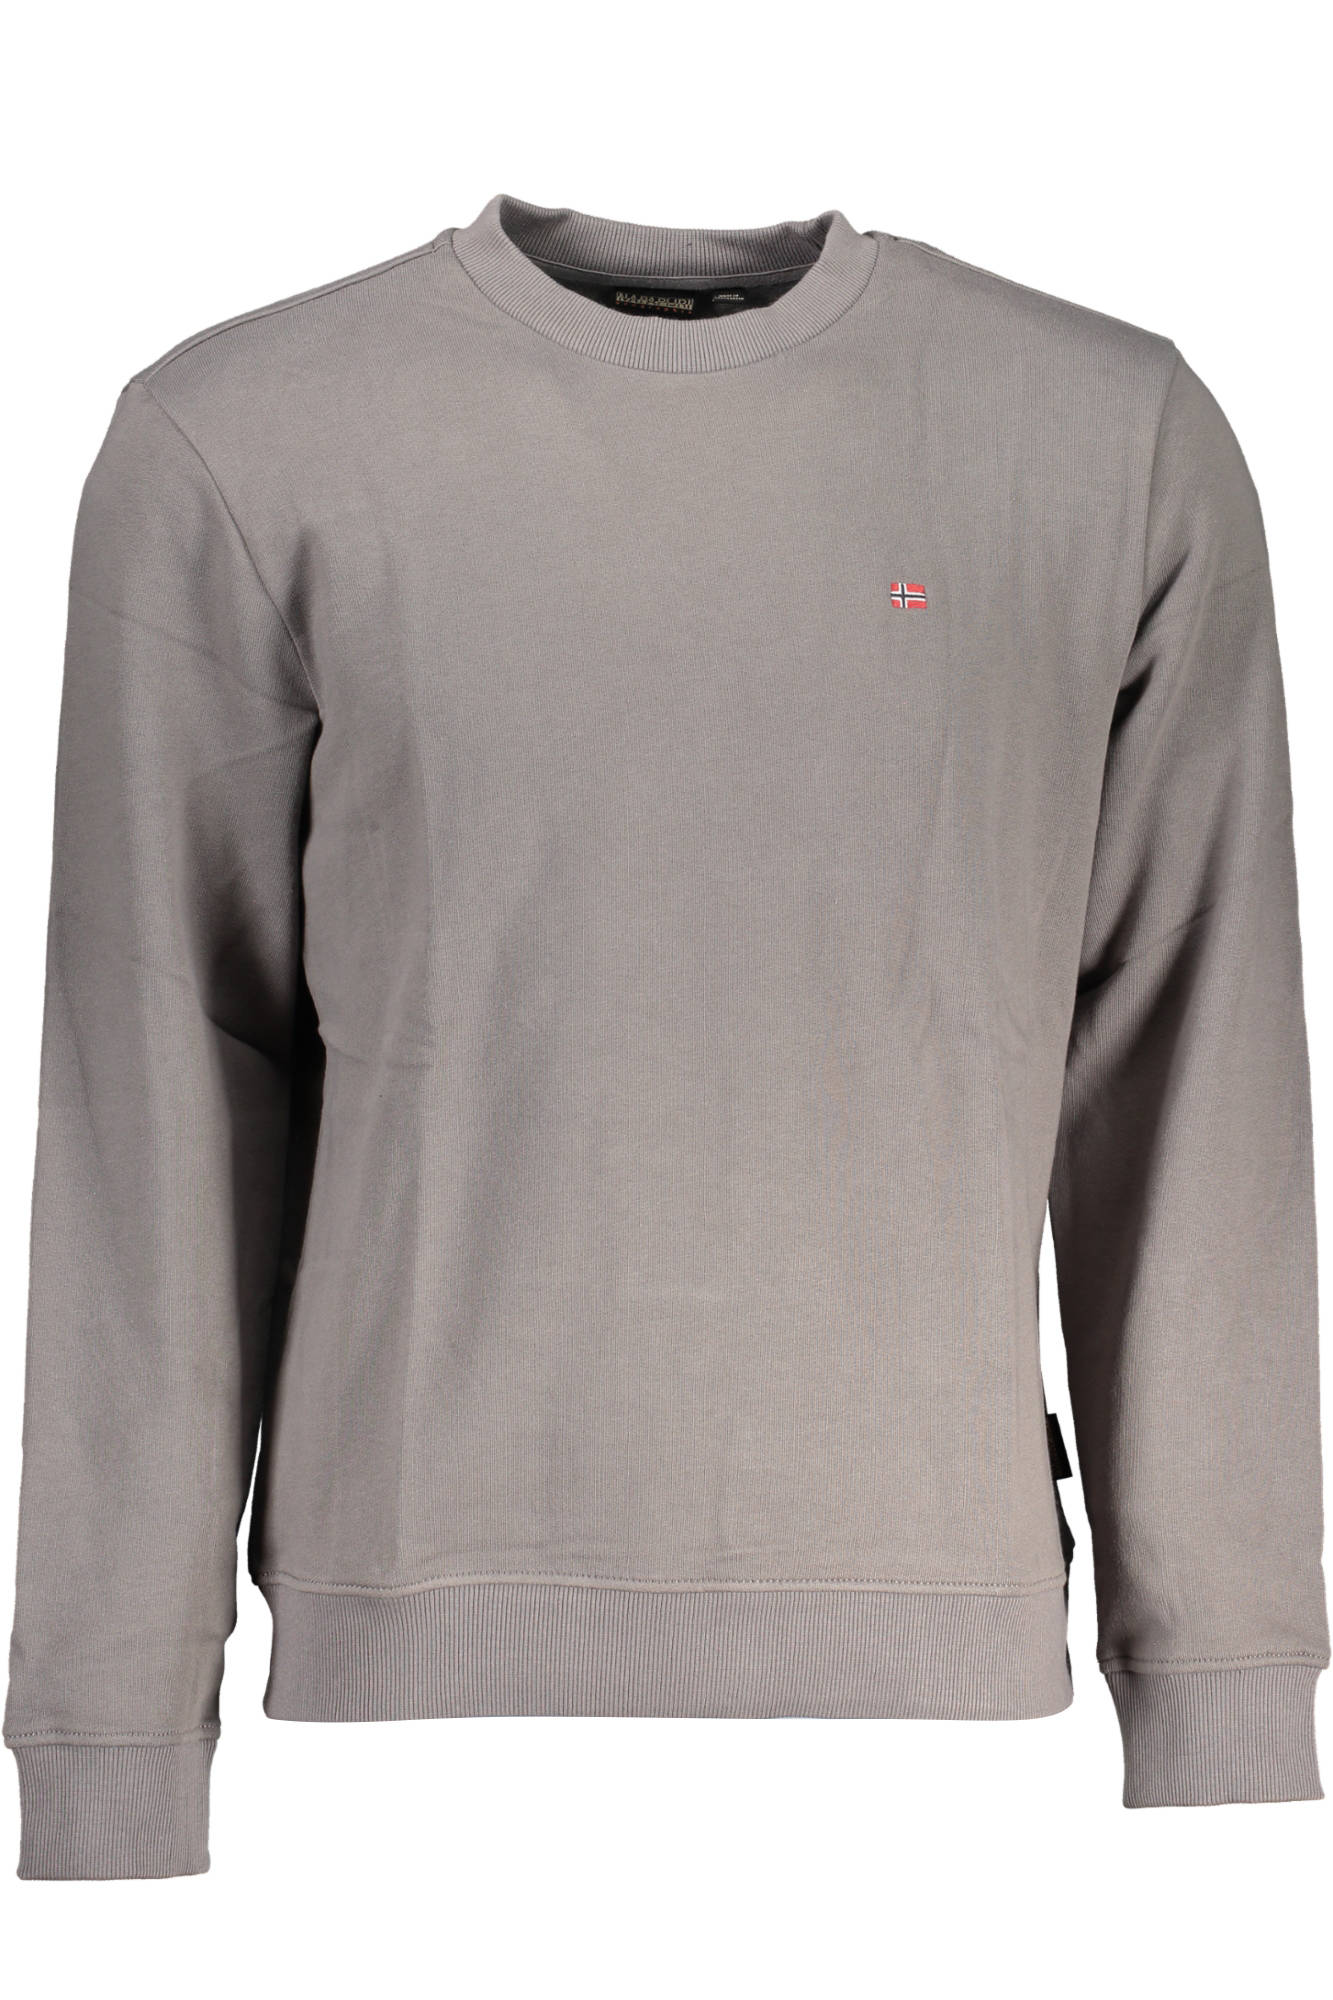 Napapijri Gray Cotton Sweater - Fizigo